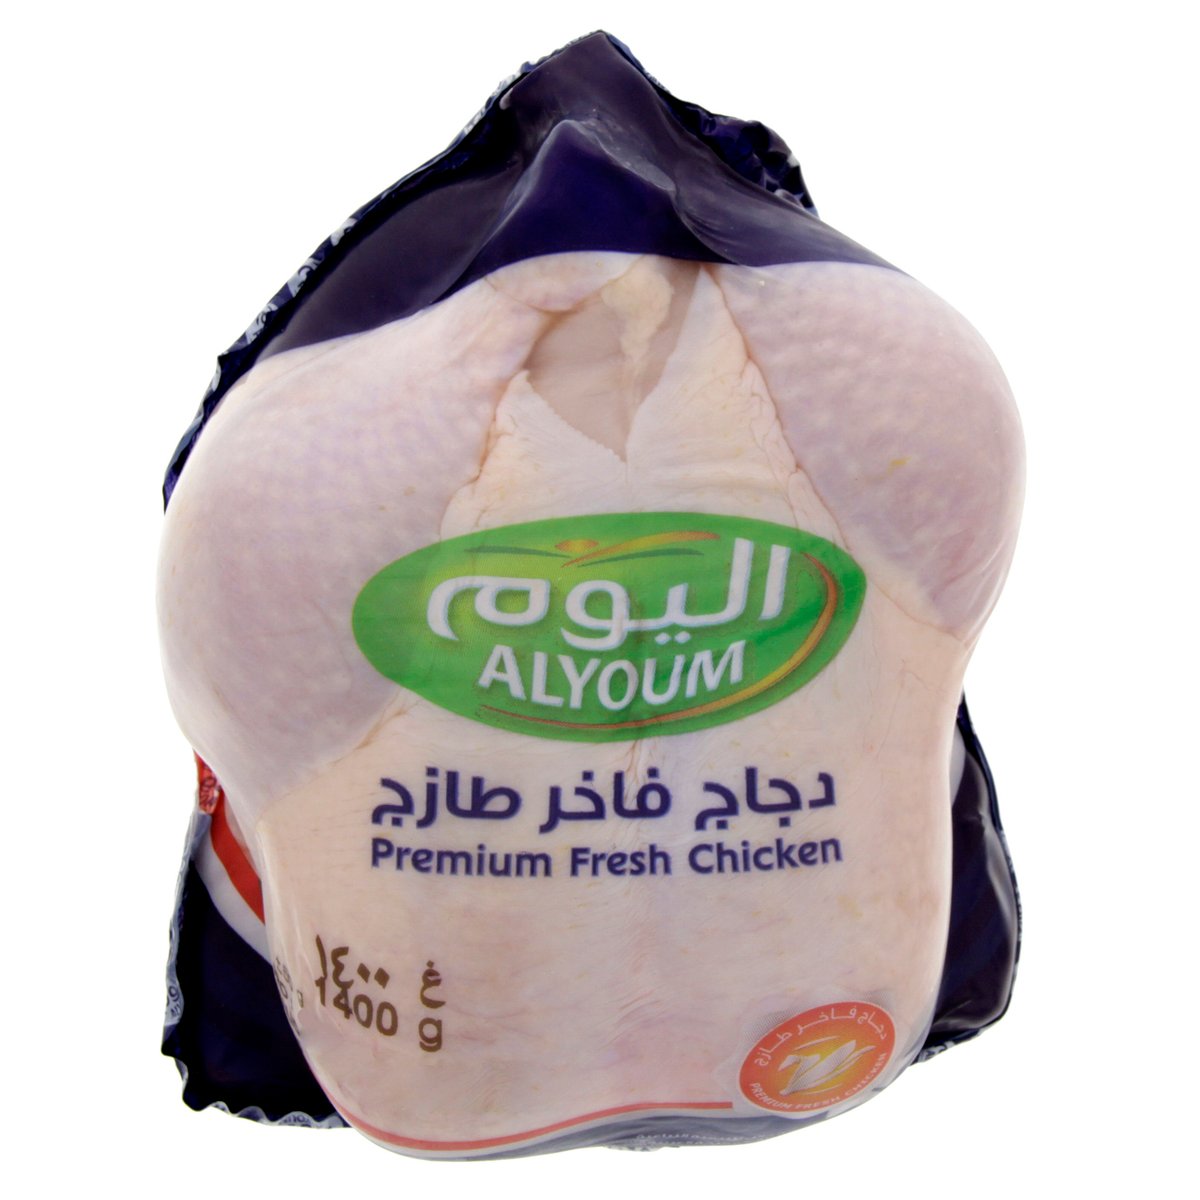 Alyoum Fresh Whole Chicken 1.4 kg